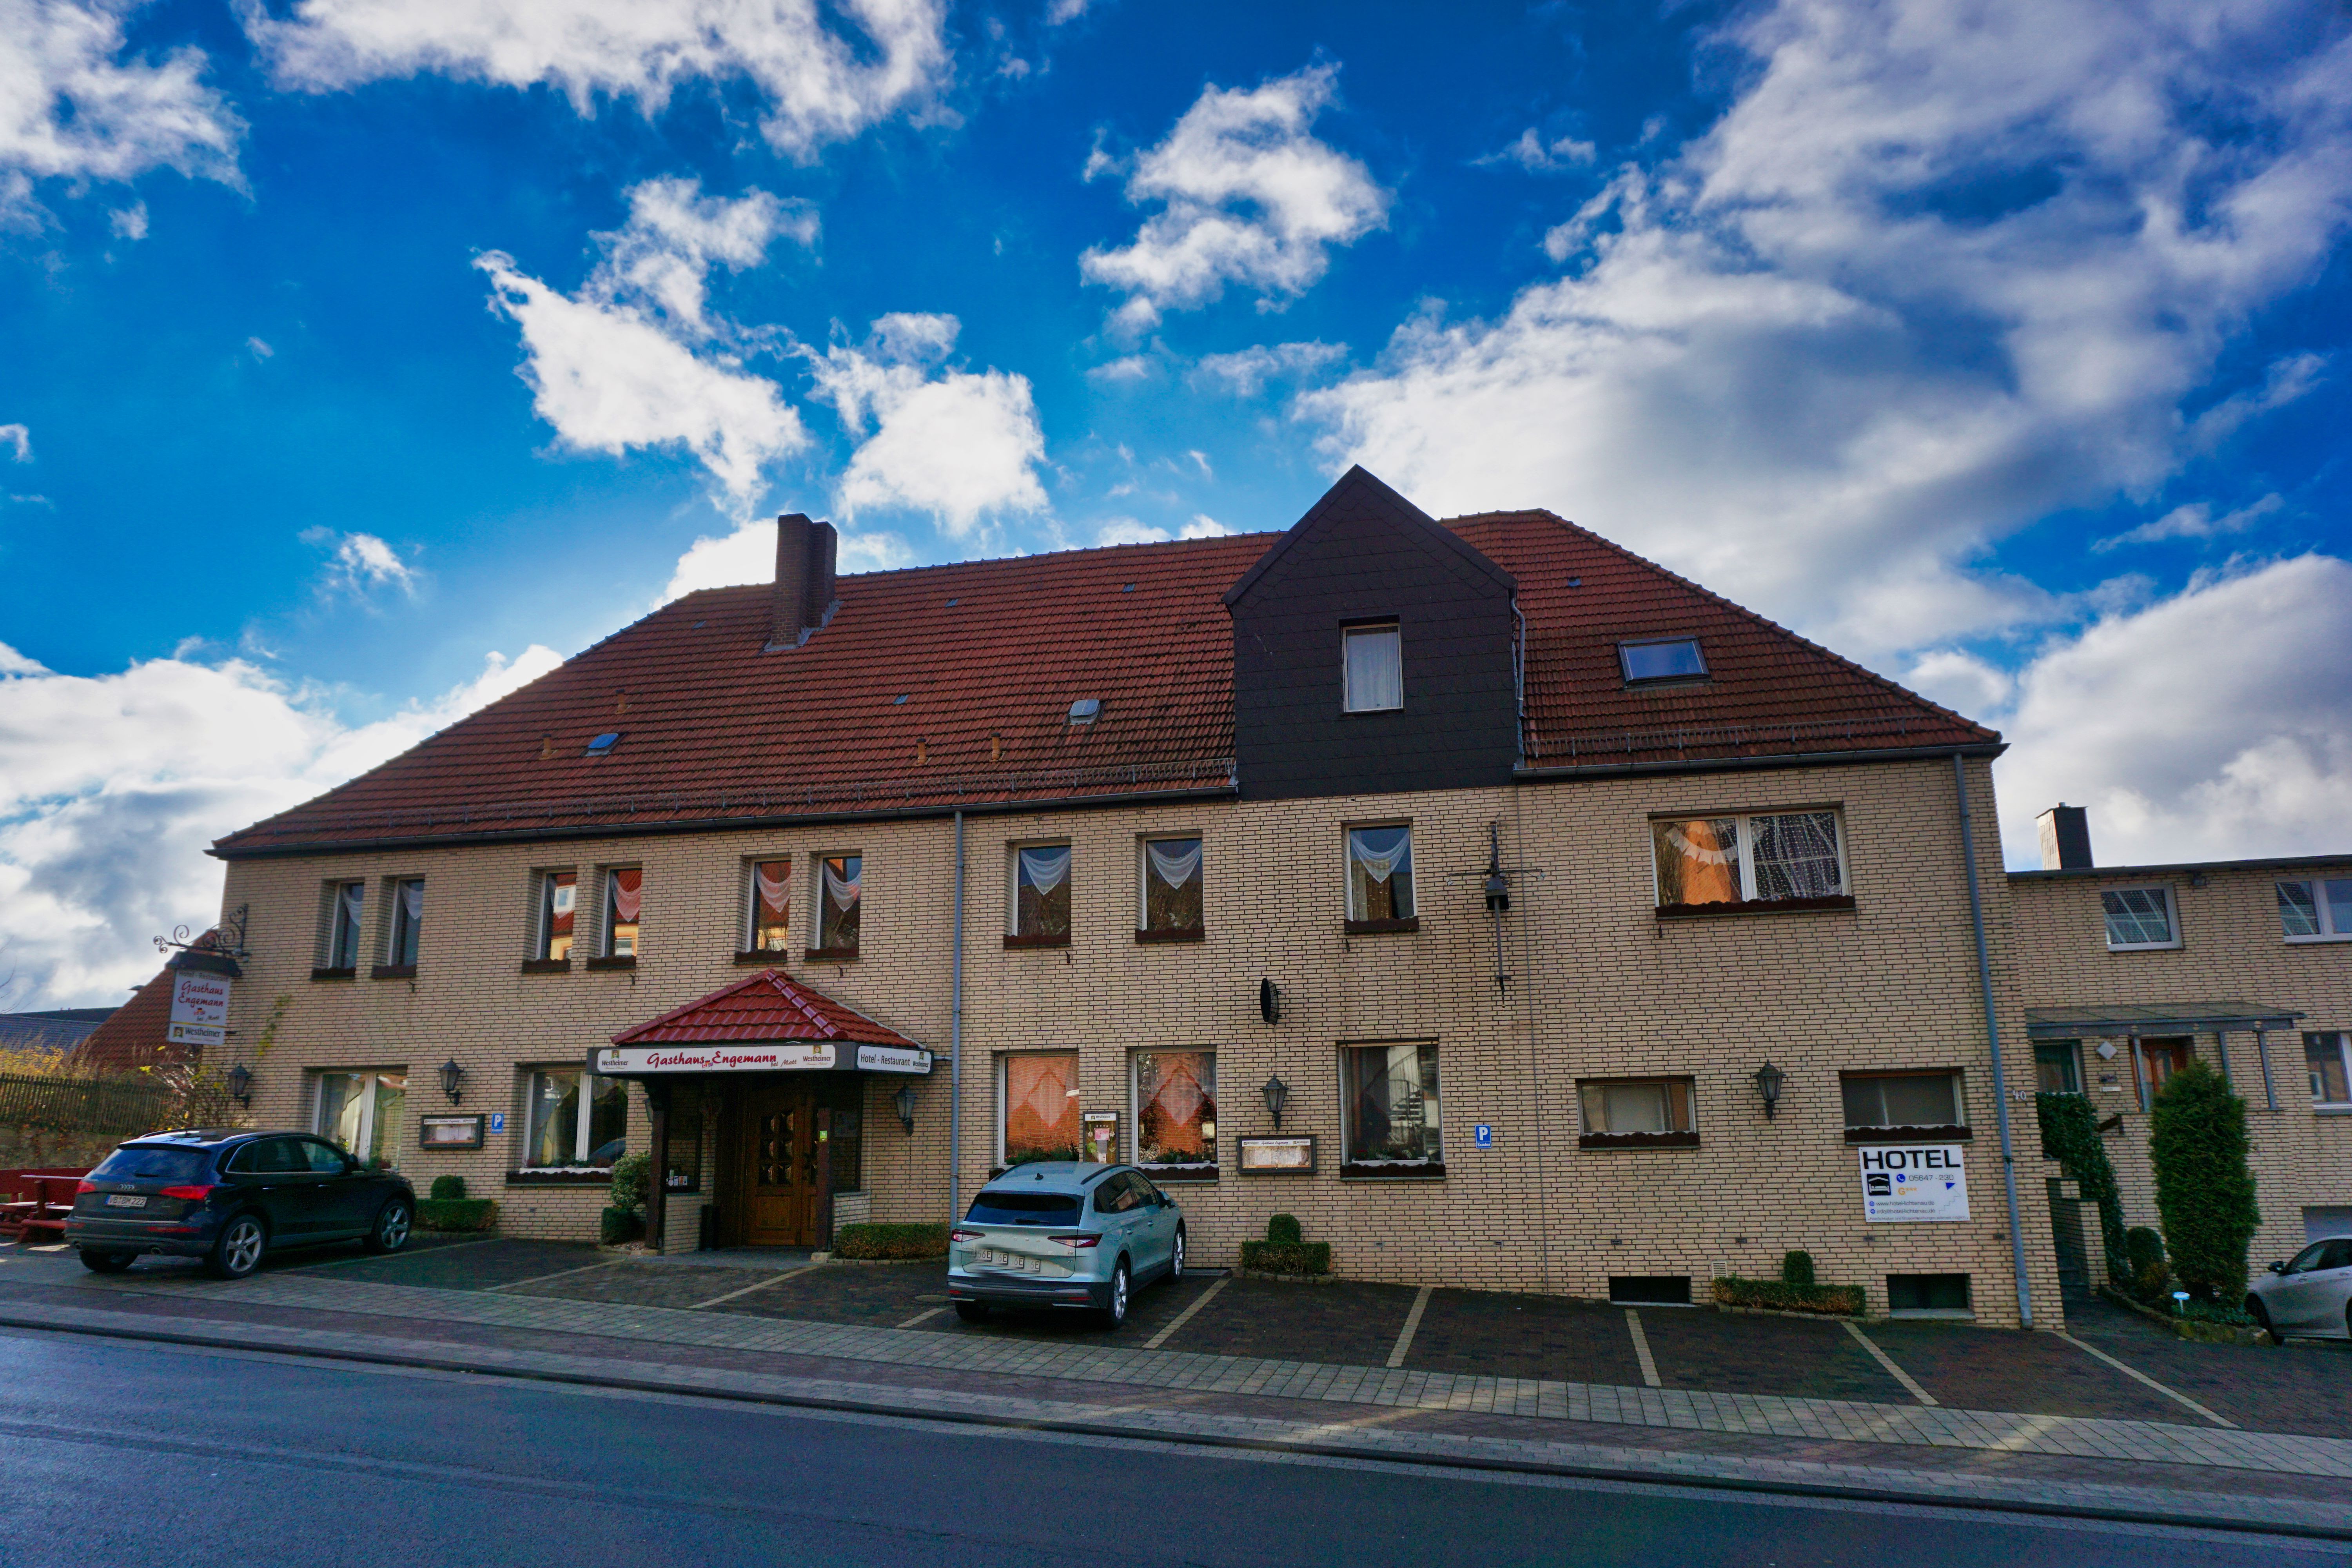 Gästehaus Hotel Engemann, Lichtenau.
